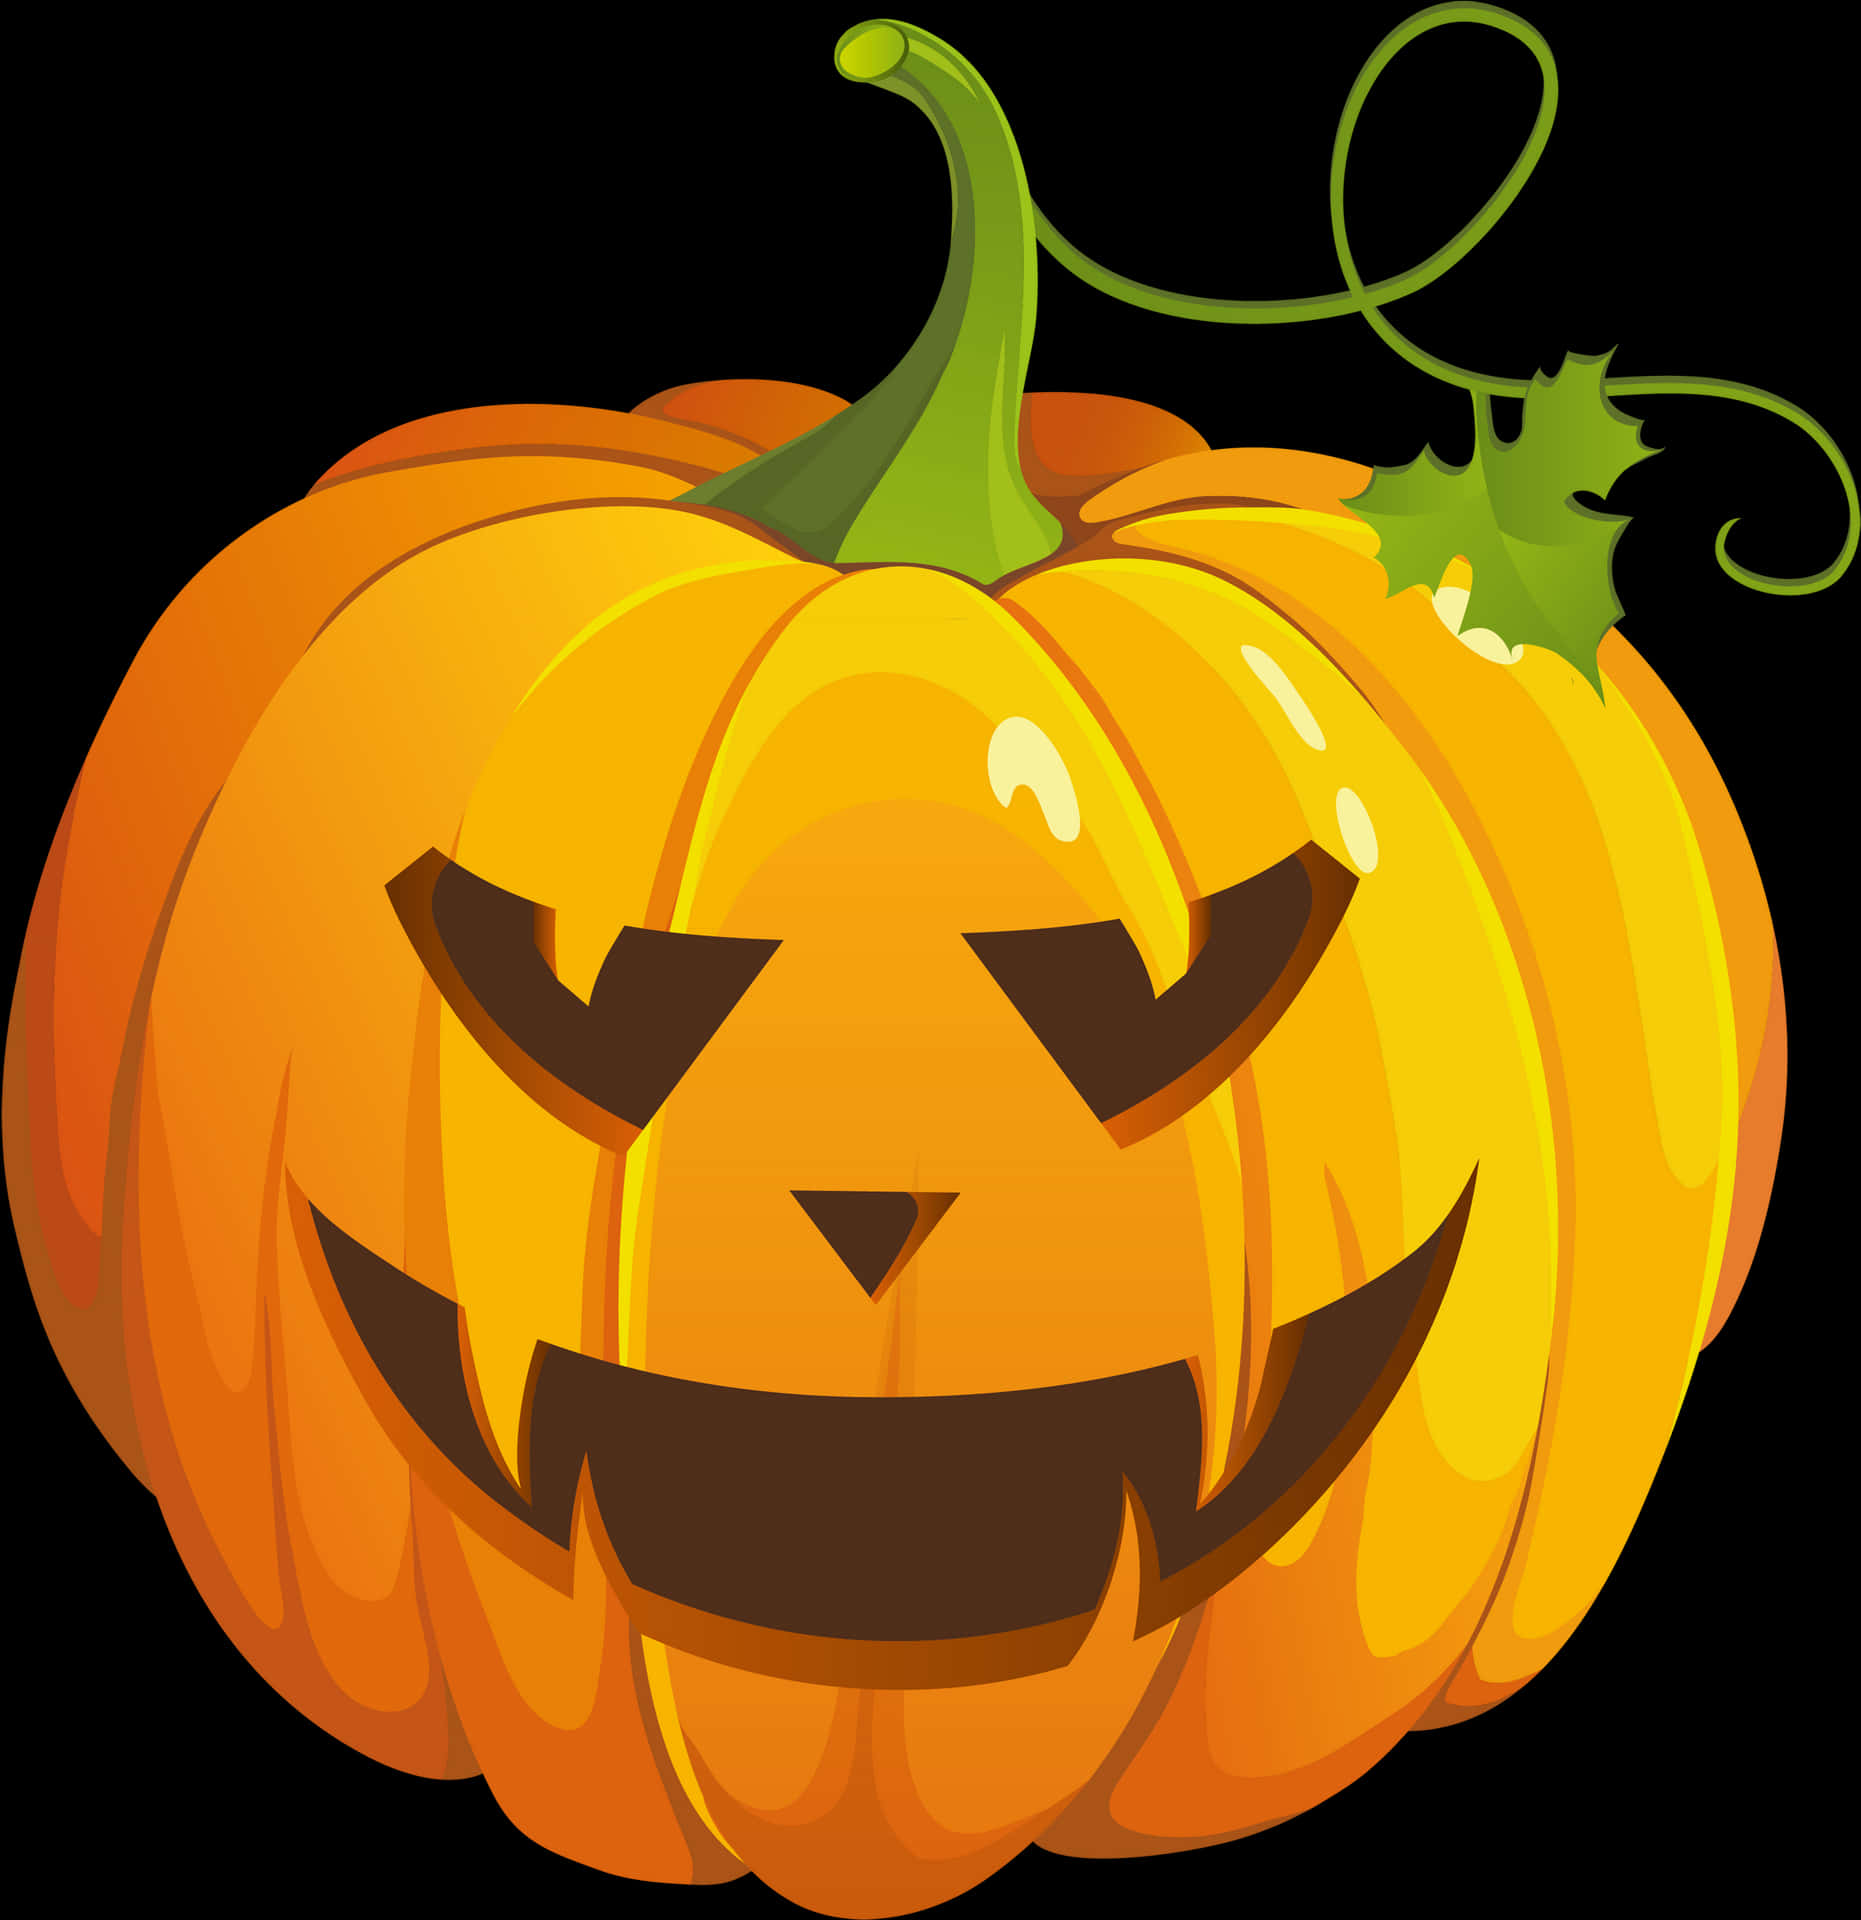 Halloween Pumpkin Carving Illustration PNG image